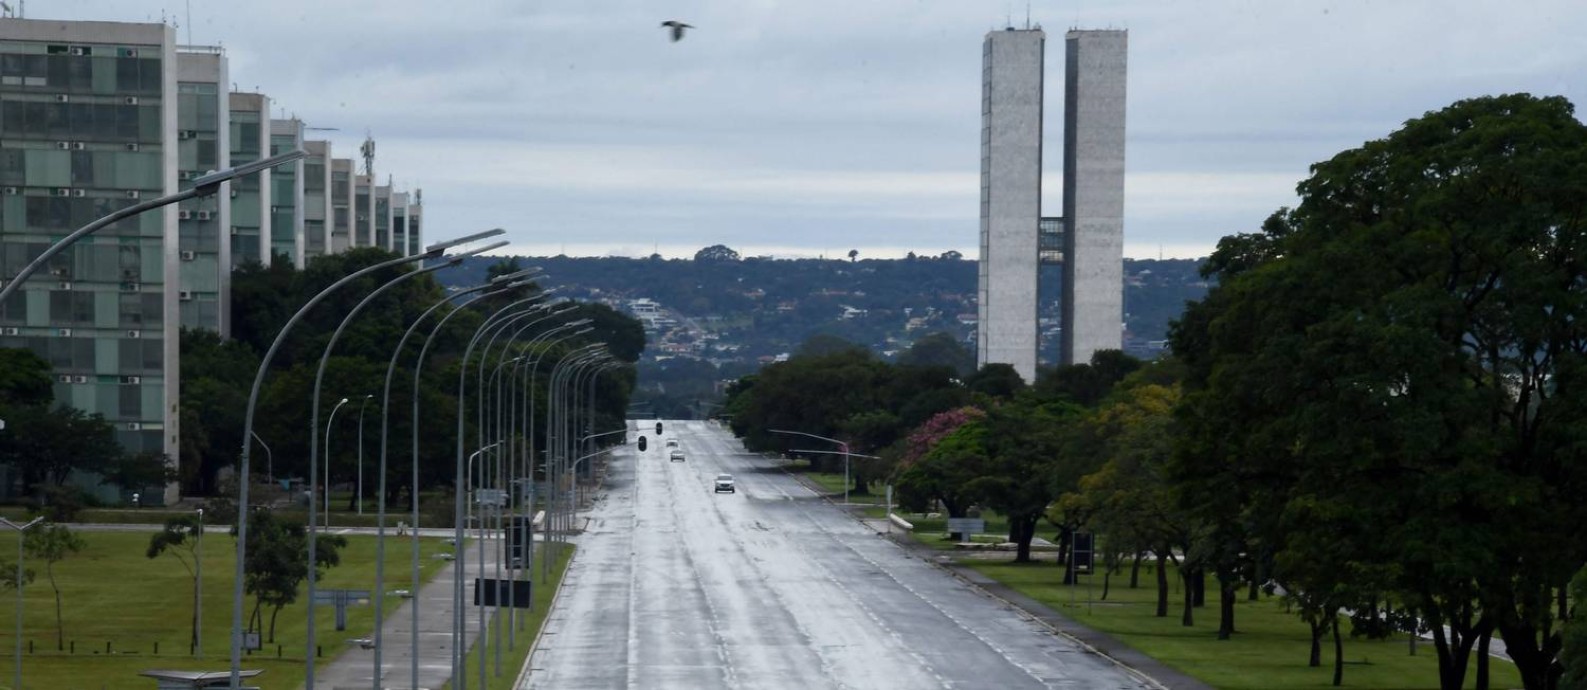 Esplanada dos Ministérios, em Brasília Foto: EVARISTO SA / AFP/28-2-2021